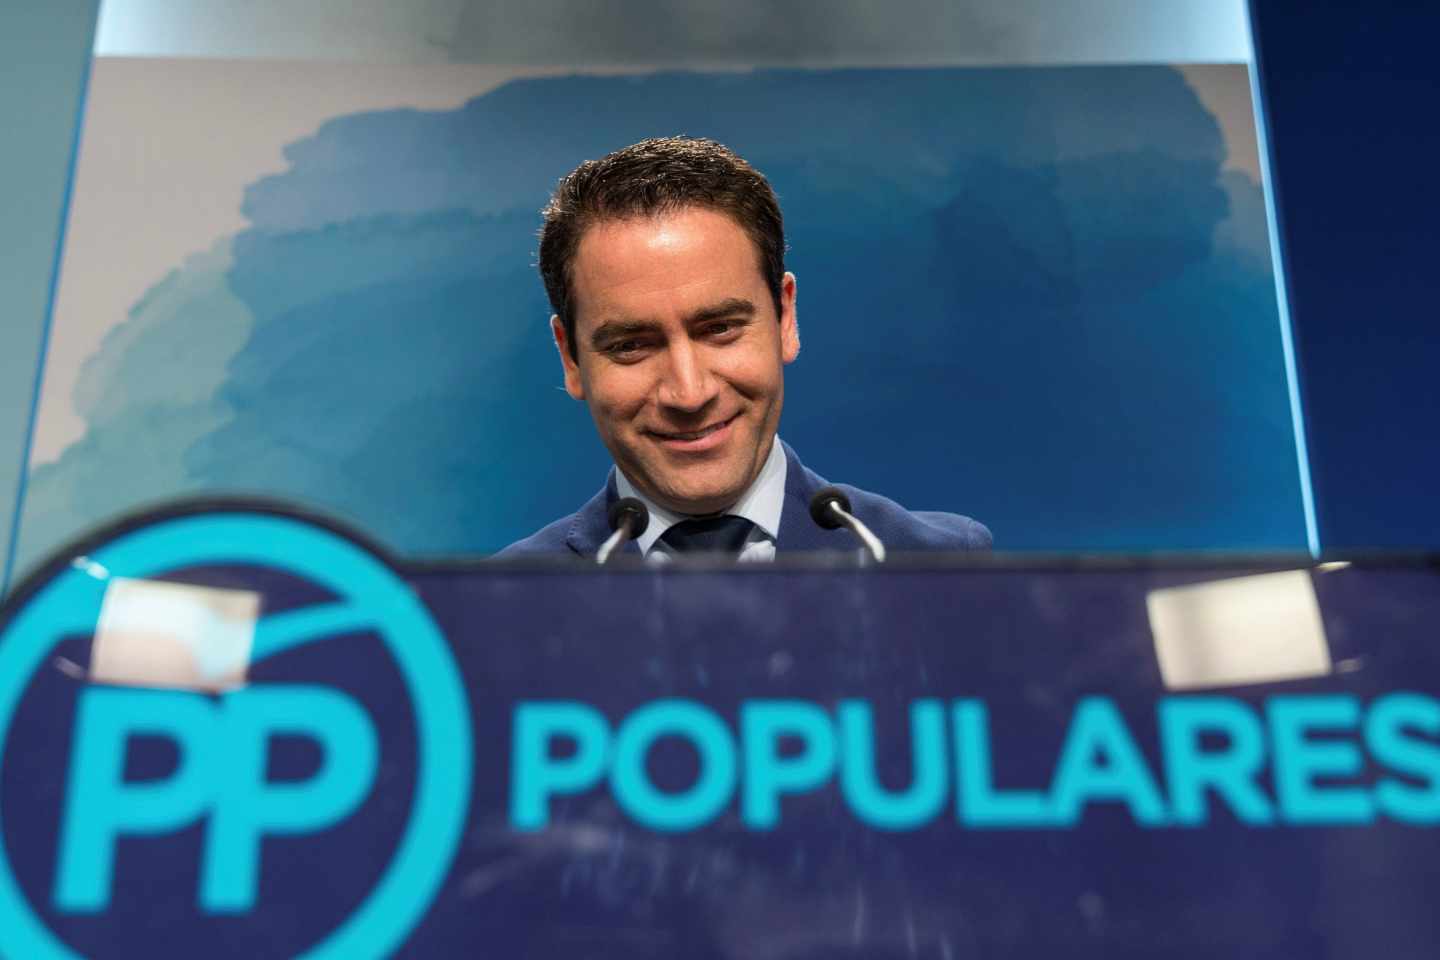 El PP, al contraataque: "No vamos a permitir una doble vara de medir con Pablo Casado"